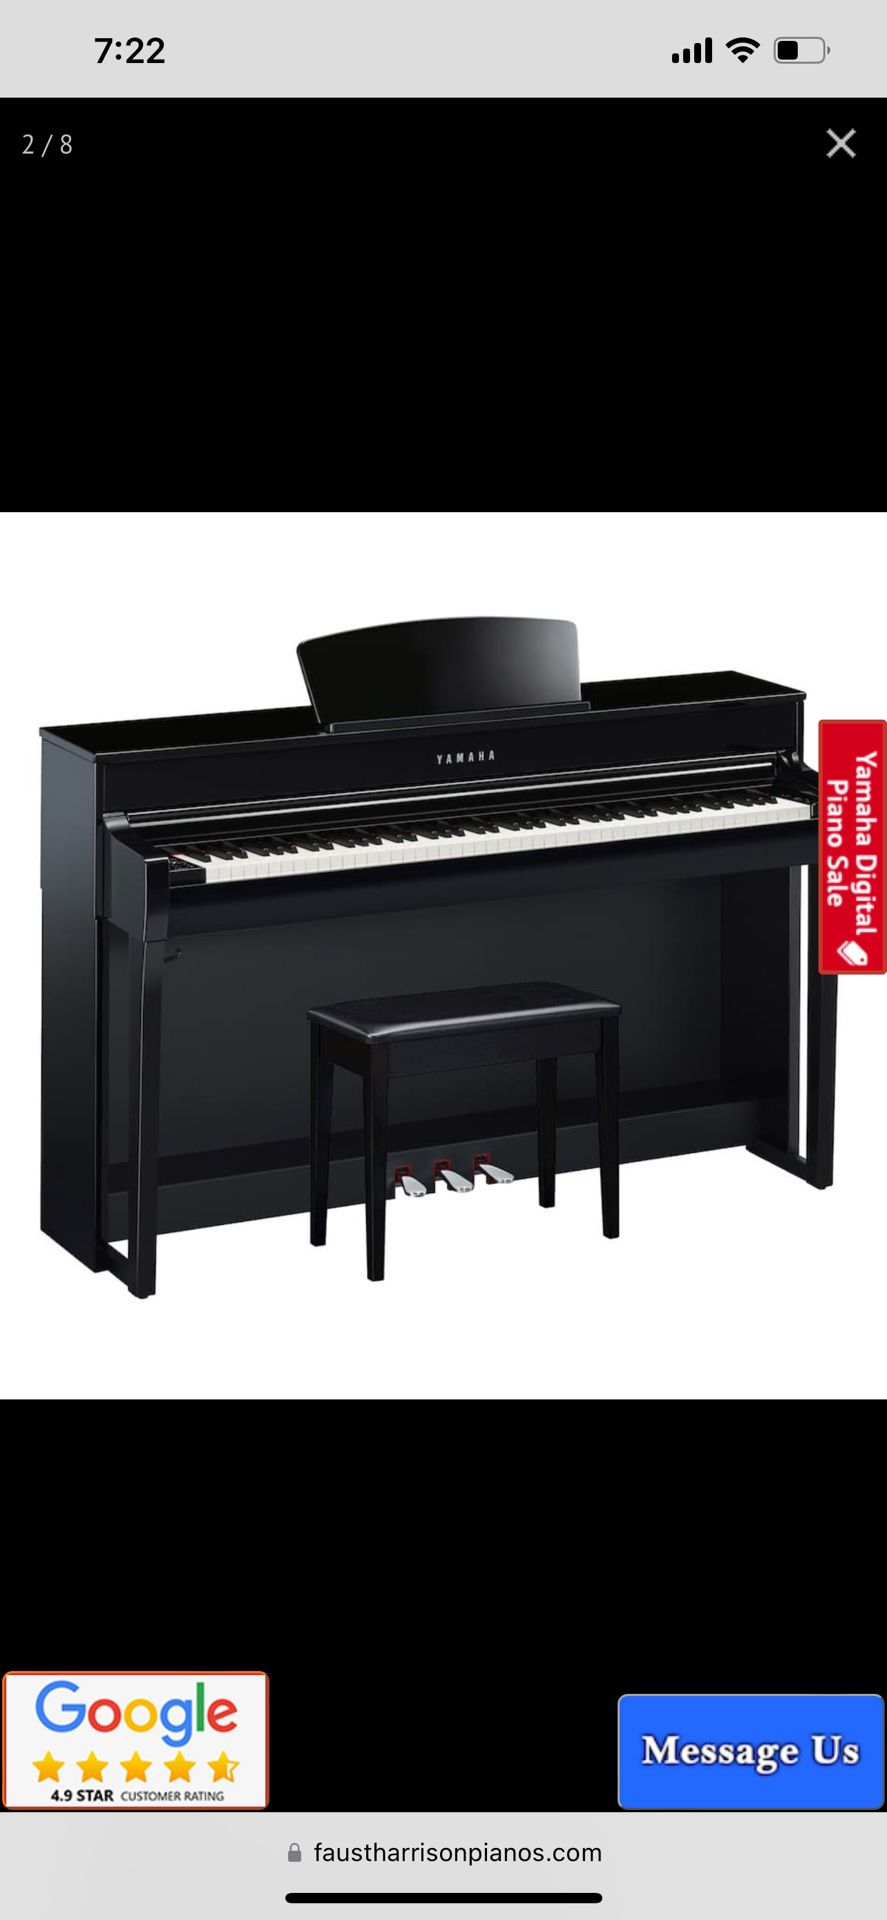 Yamaha automatic piano, clp 645 clavinova 